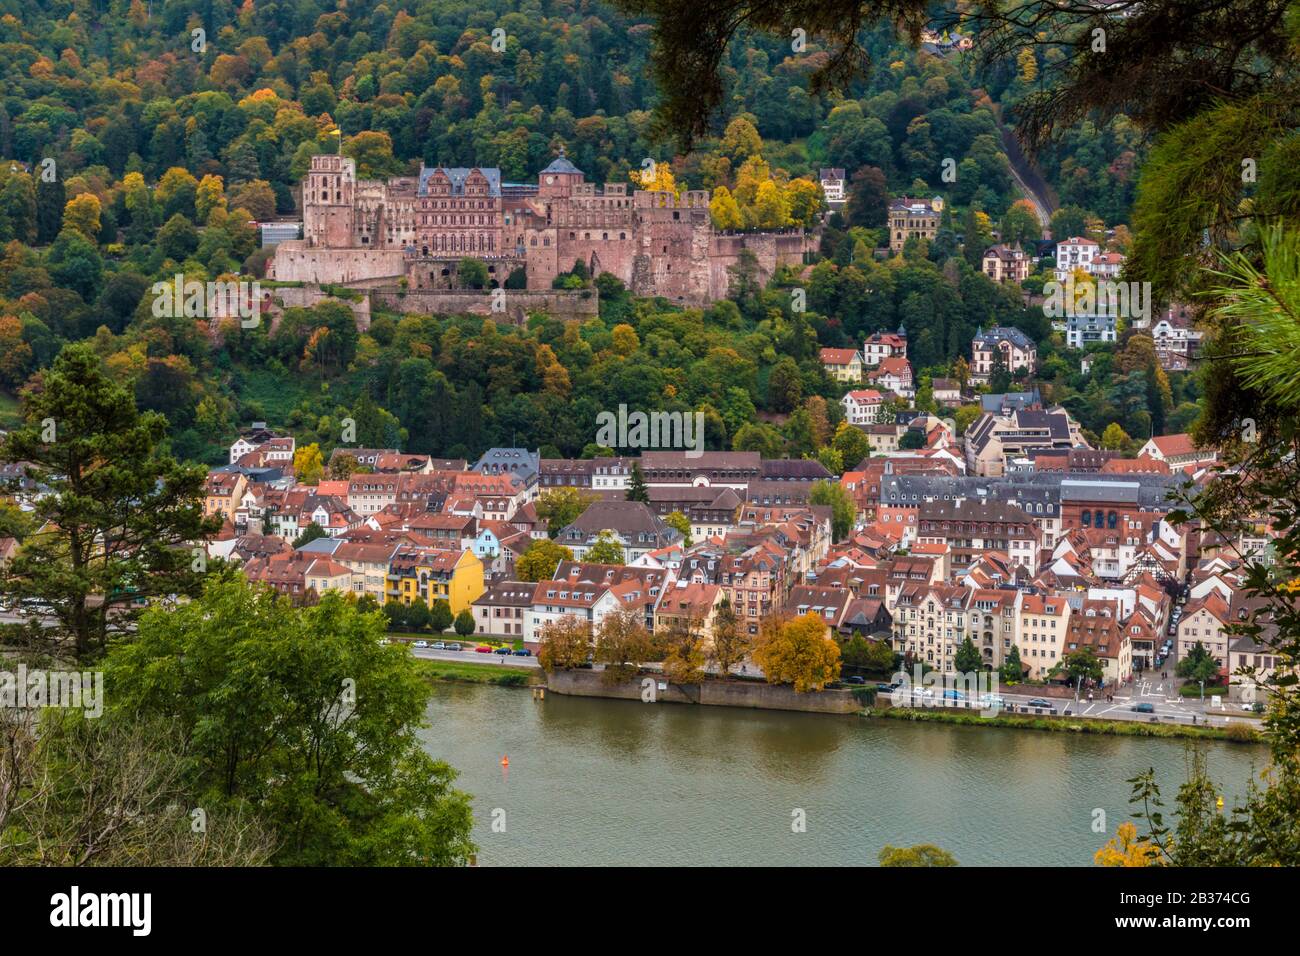 Romantischer Rundblick auf die Burgruine von Heidelberg auf der Königstuhl-Schanze, die Altstadt und den Neckar vom Weg Des Philosophen in... Stockfoto